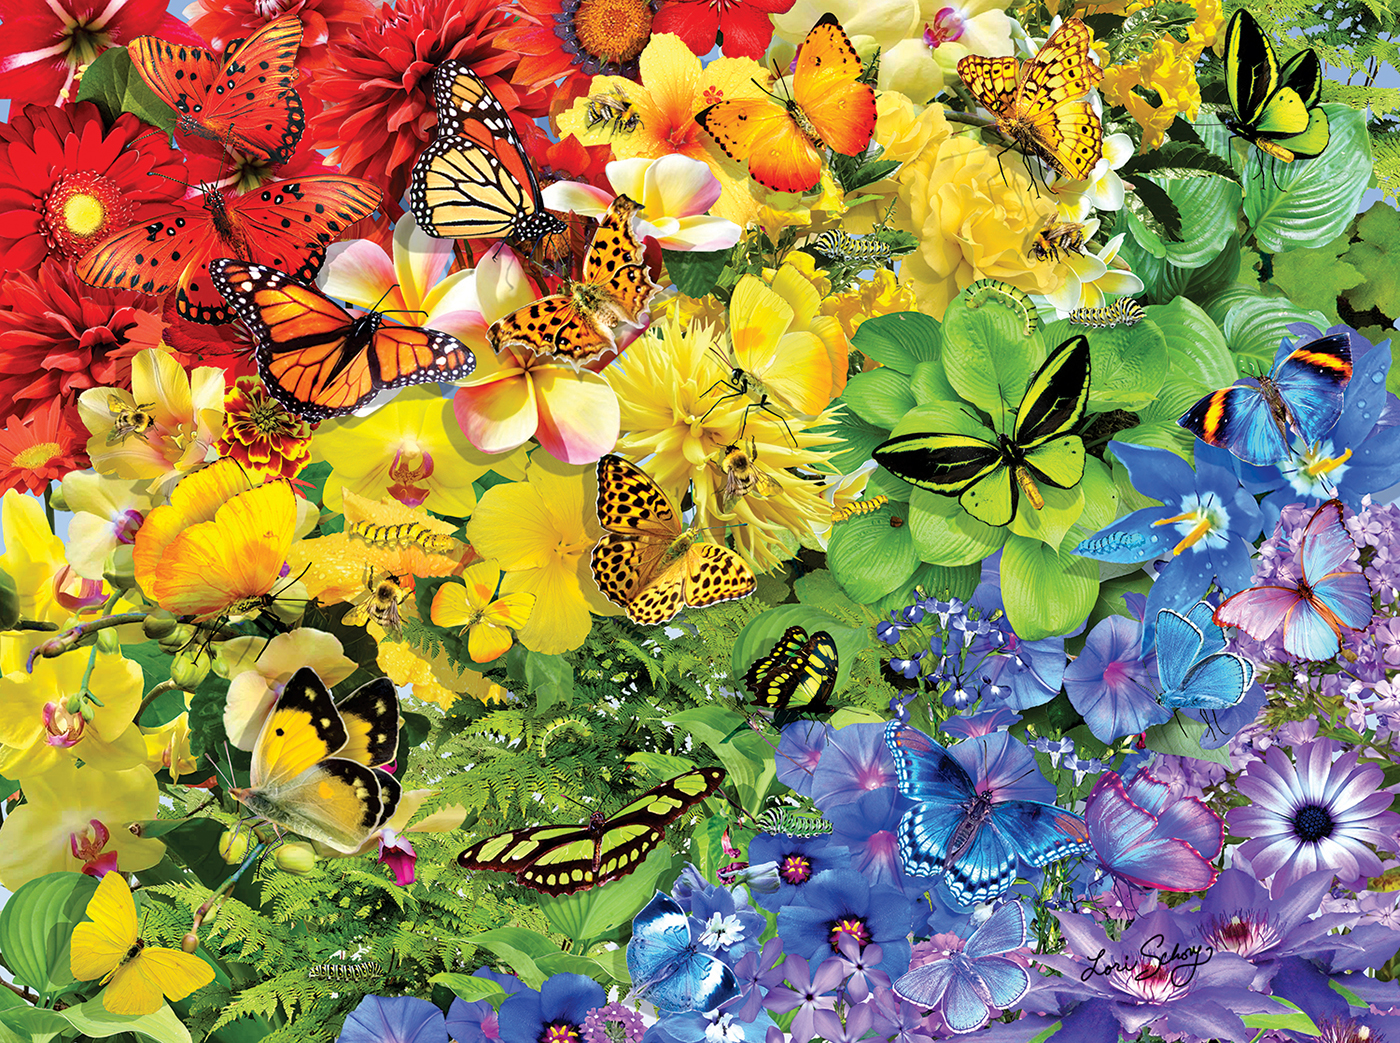 Rainbow Butterflies 1000